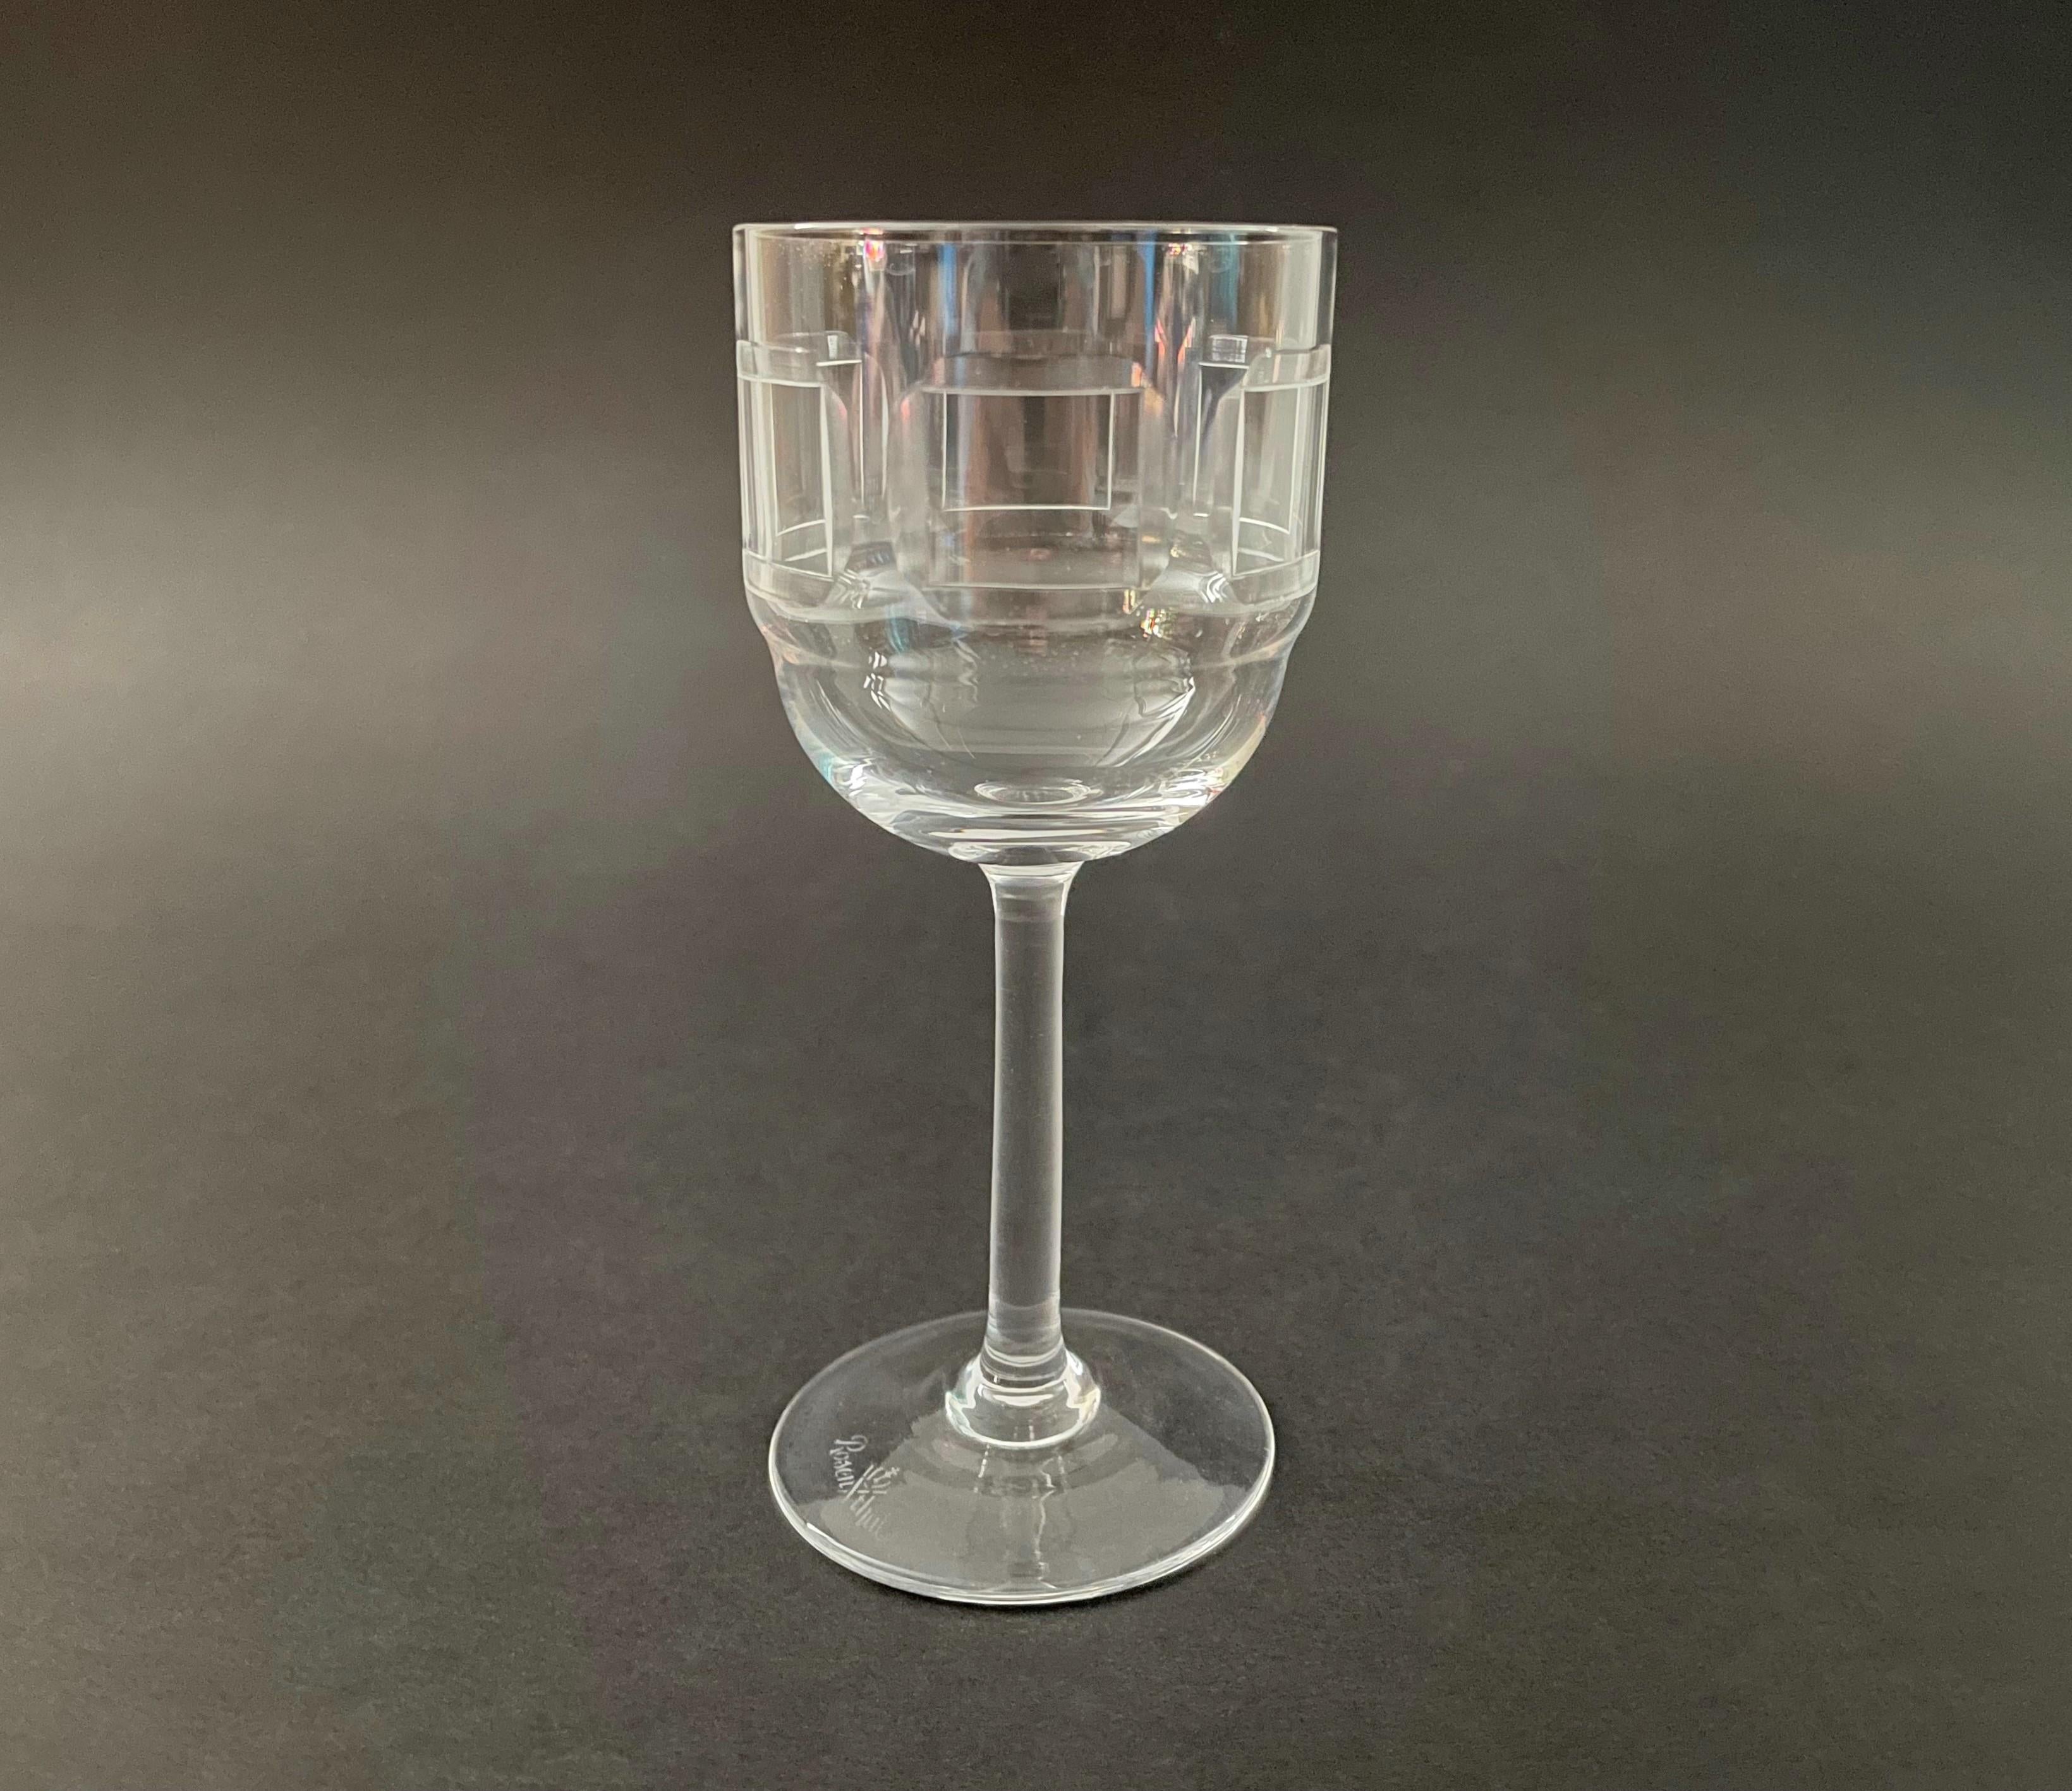 ROSENTHAL (Fabricant) - SQUARES (Motif) - Rare verre à liqueur en cristal clair taillé à la meule, datant du milieu du siècle, présentant une bande de six carrés gravés à l'extérieur du verre - signé sur la base - Allemagne - vers les années